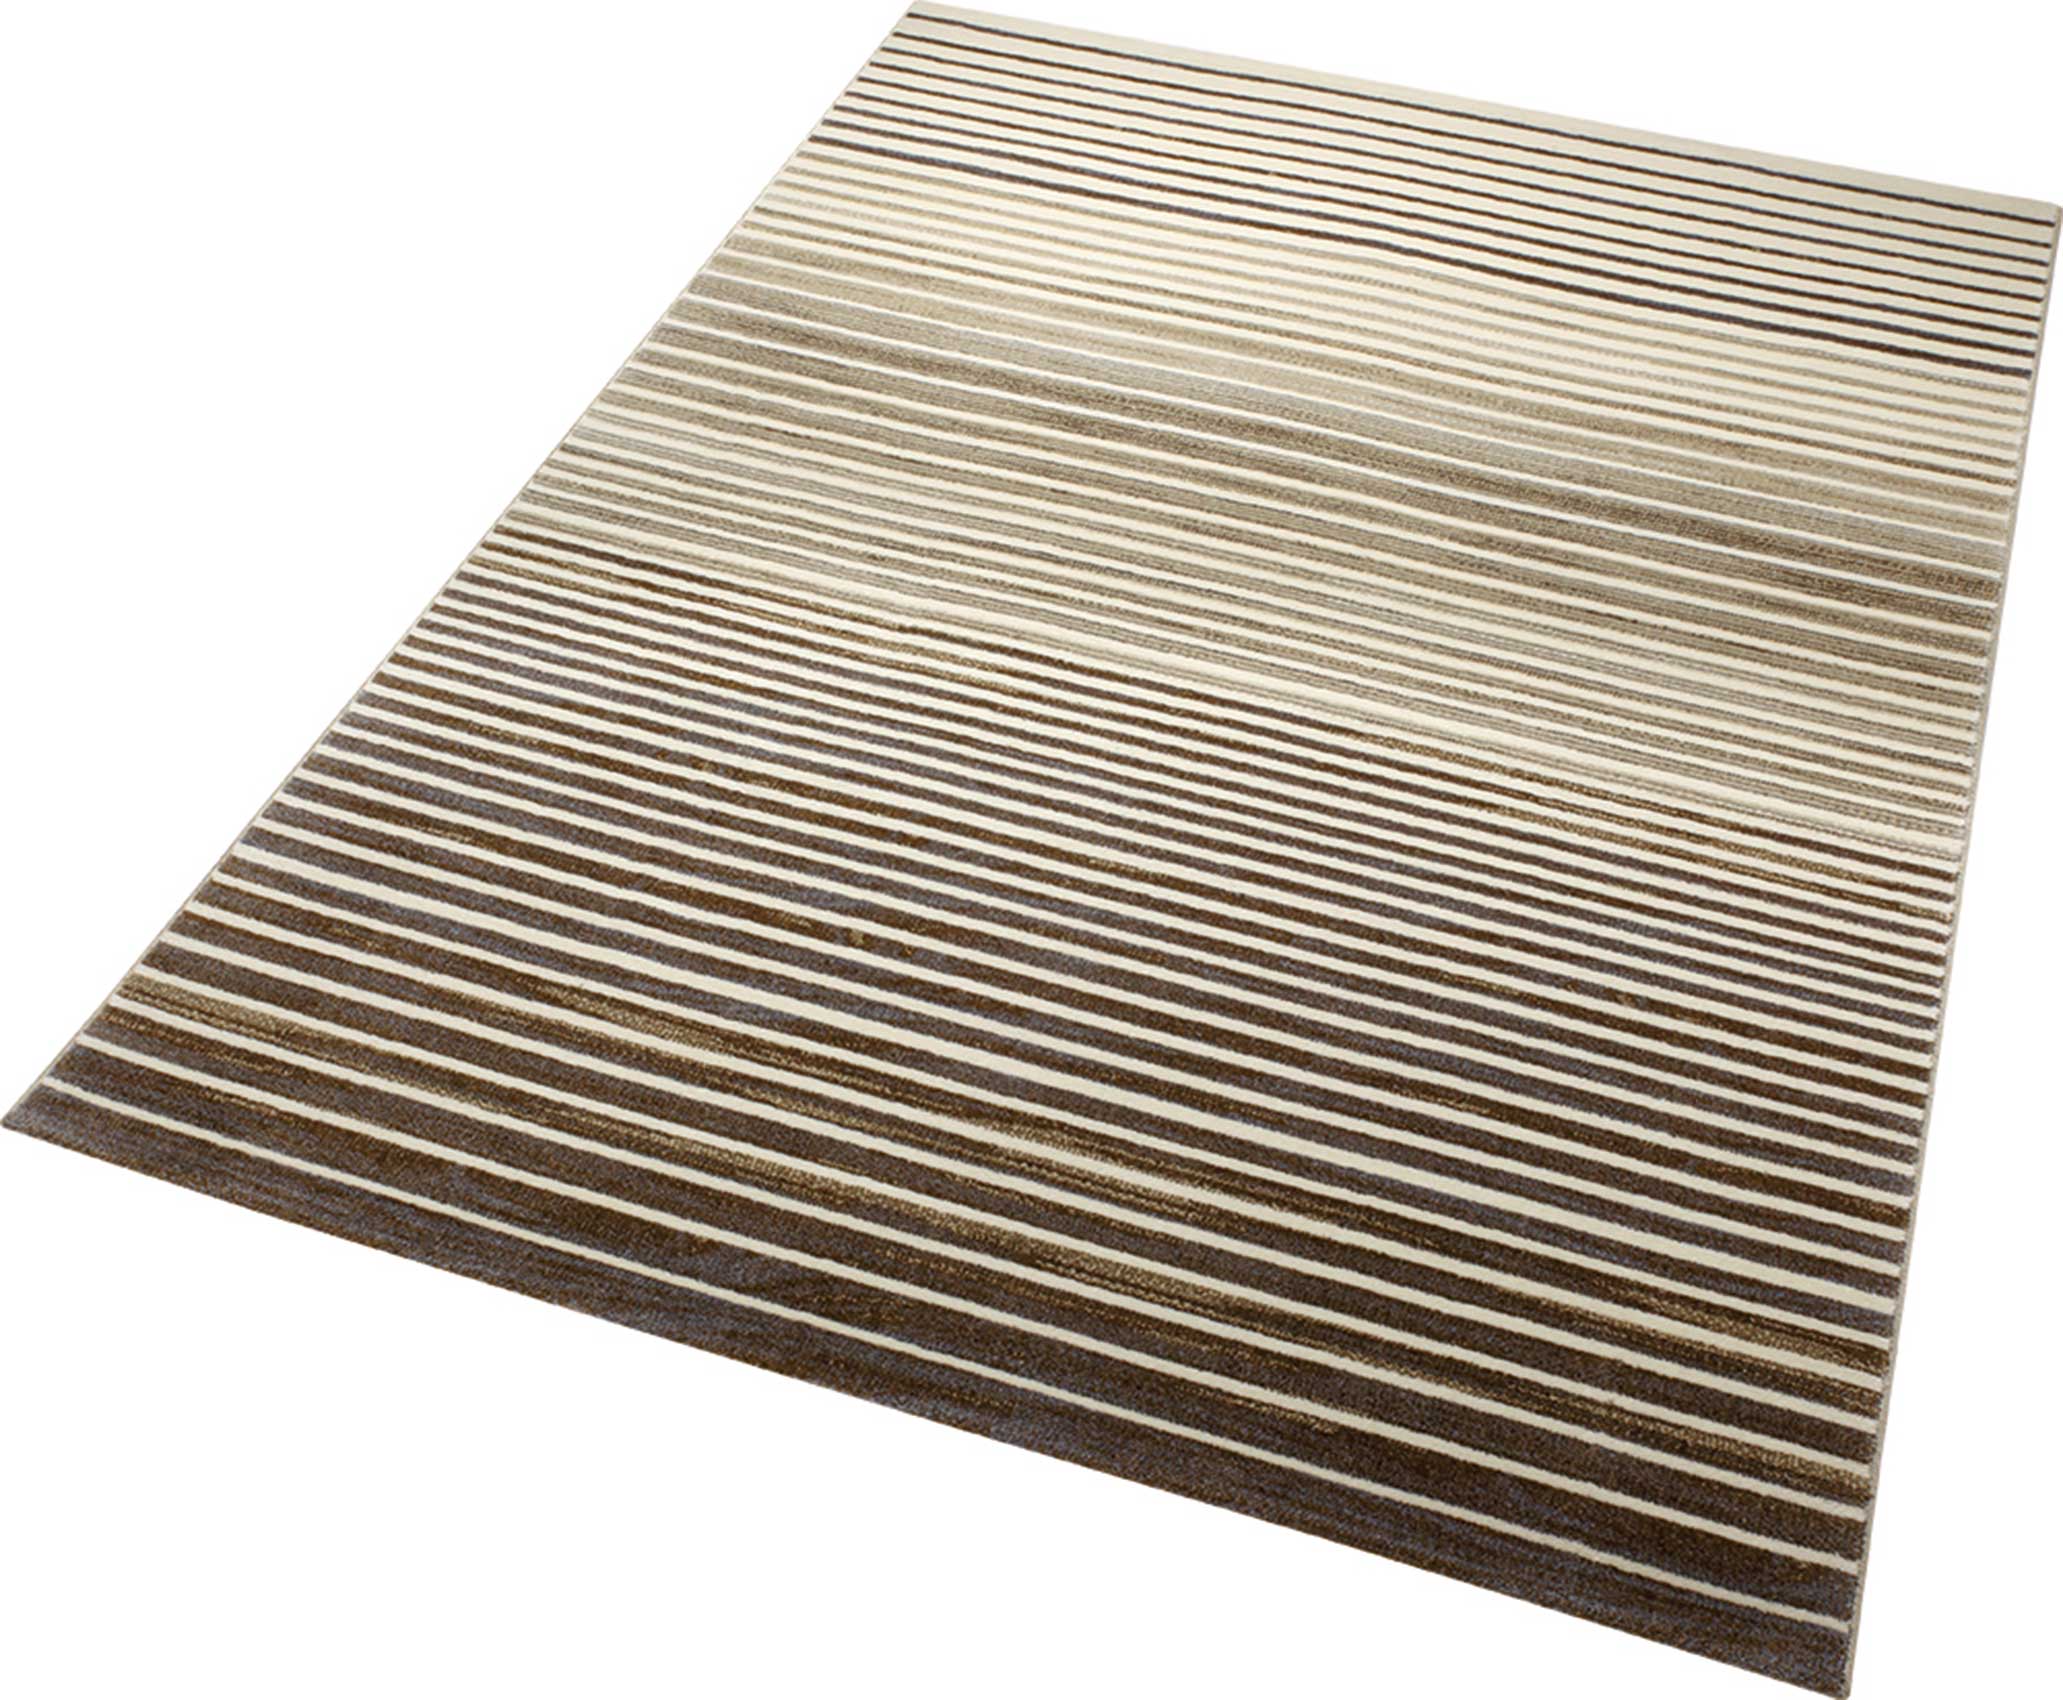 Esprit Kurzflor Teppich » Nifty Stripes « braun taupe beige - Ansicht 2